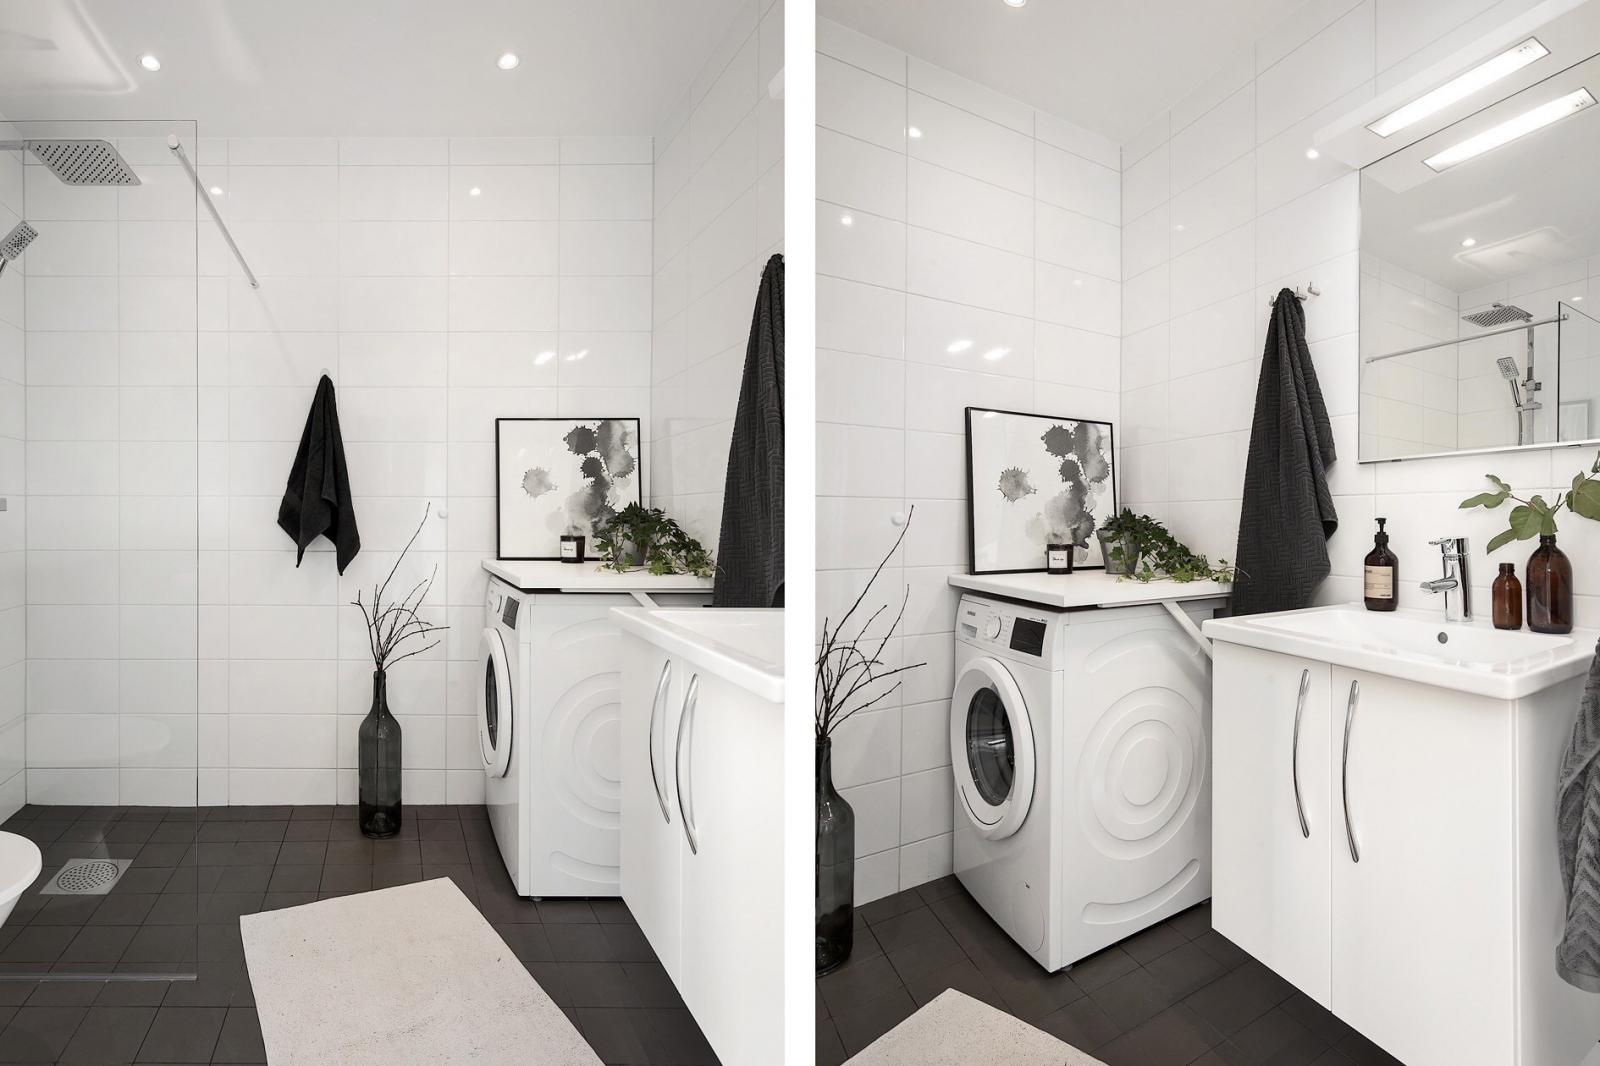 Hình ảnh phòng tắm màu trắng chủ đạo với sàn lát gạch màu đen, trang trí bằng tranh tường, cây xanh